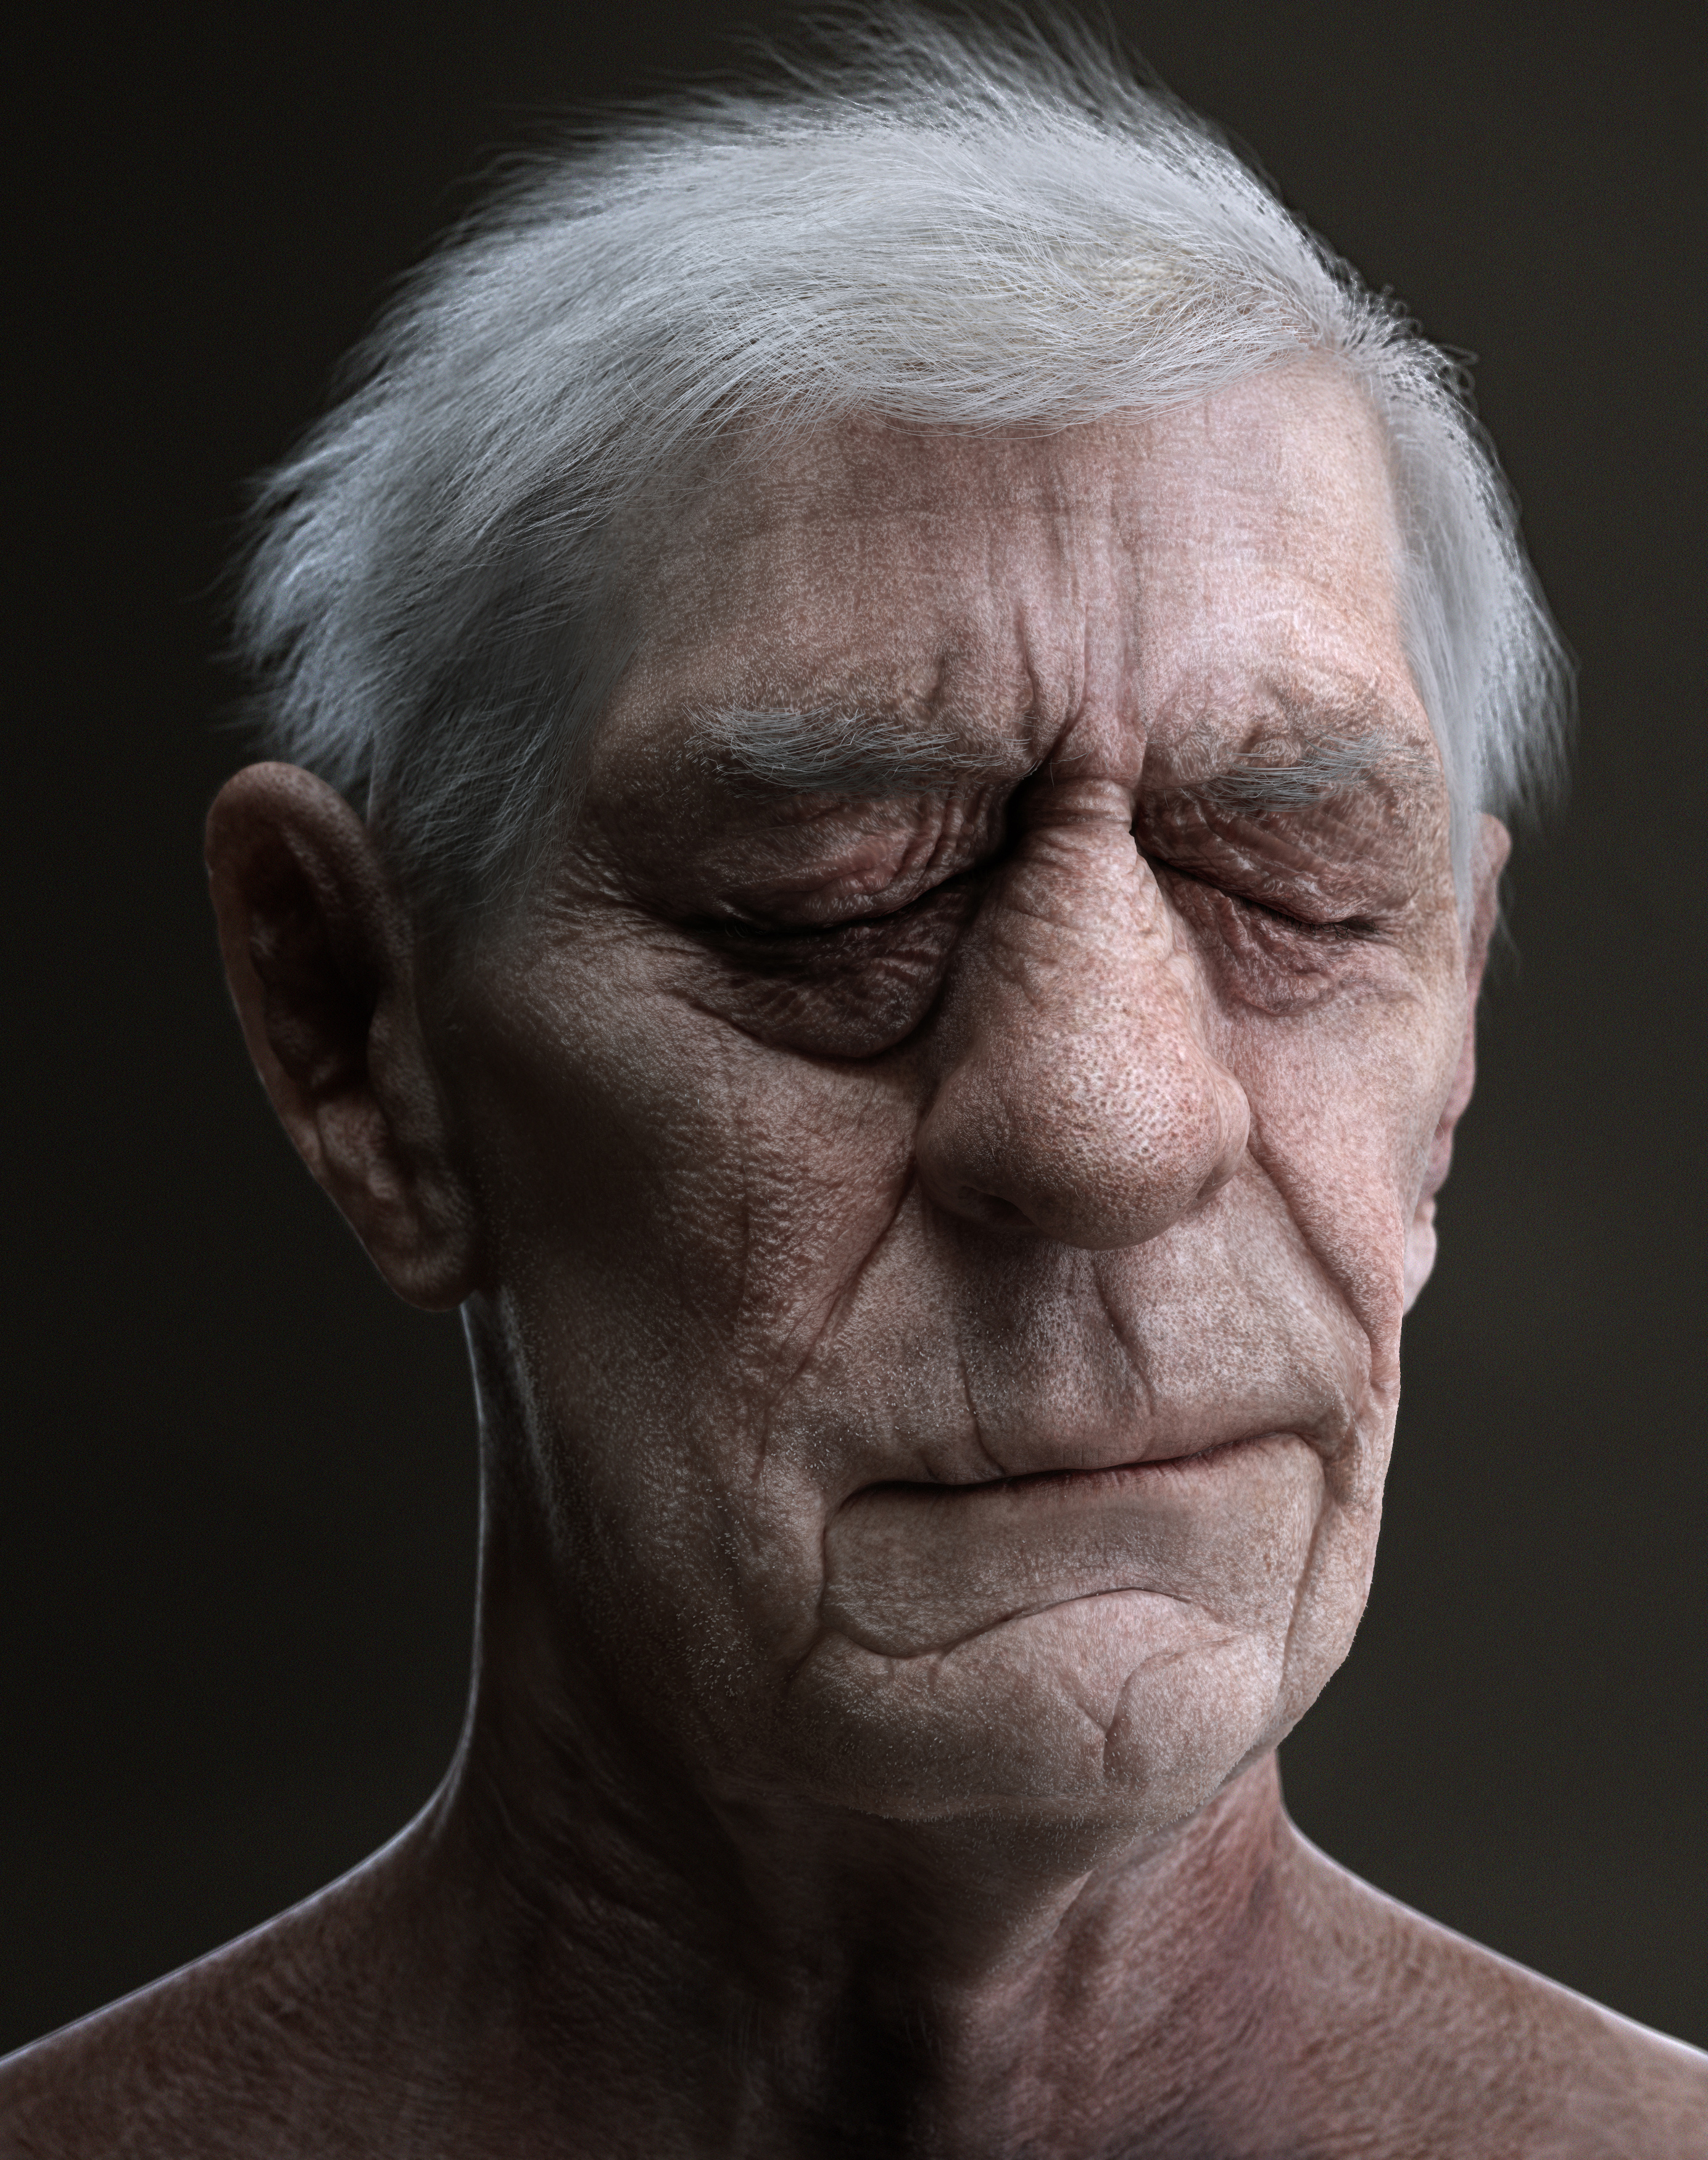 Old man face. Портрет старого человека. Old - старый. Стареющее лицо мужчины.